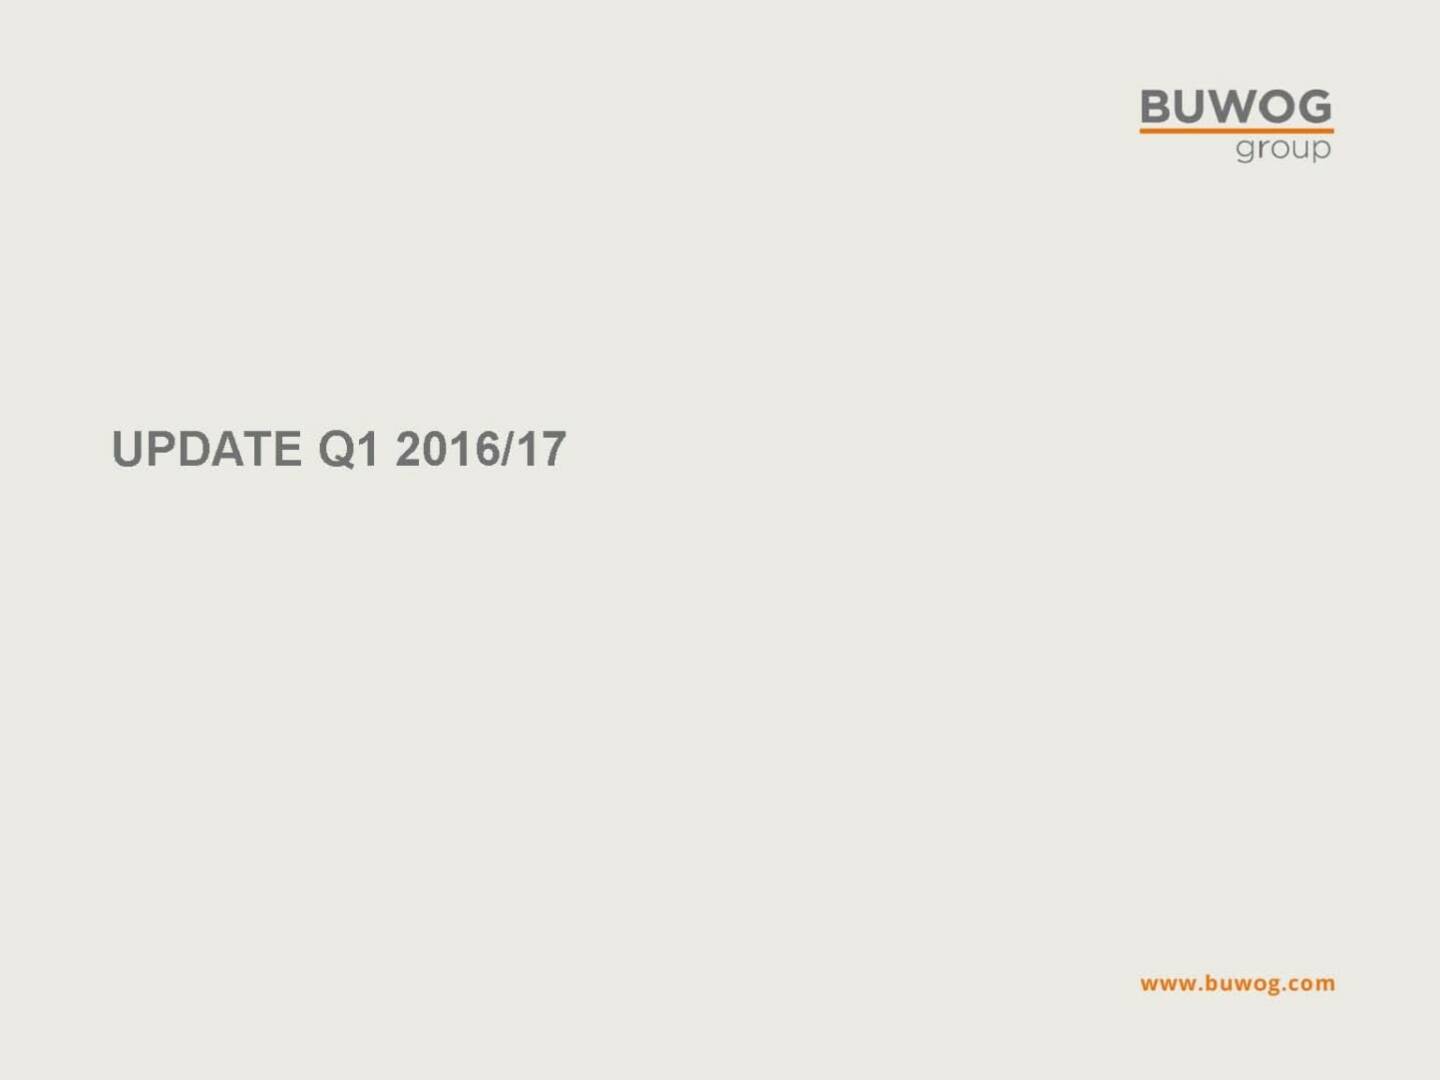 Buwog Group - Update Q1 2016/17